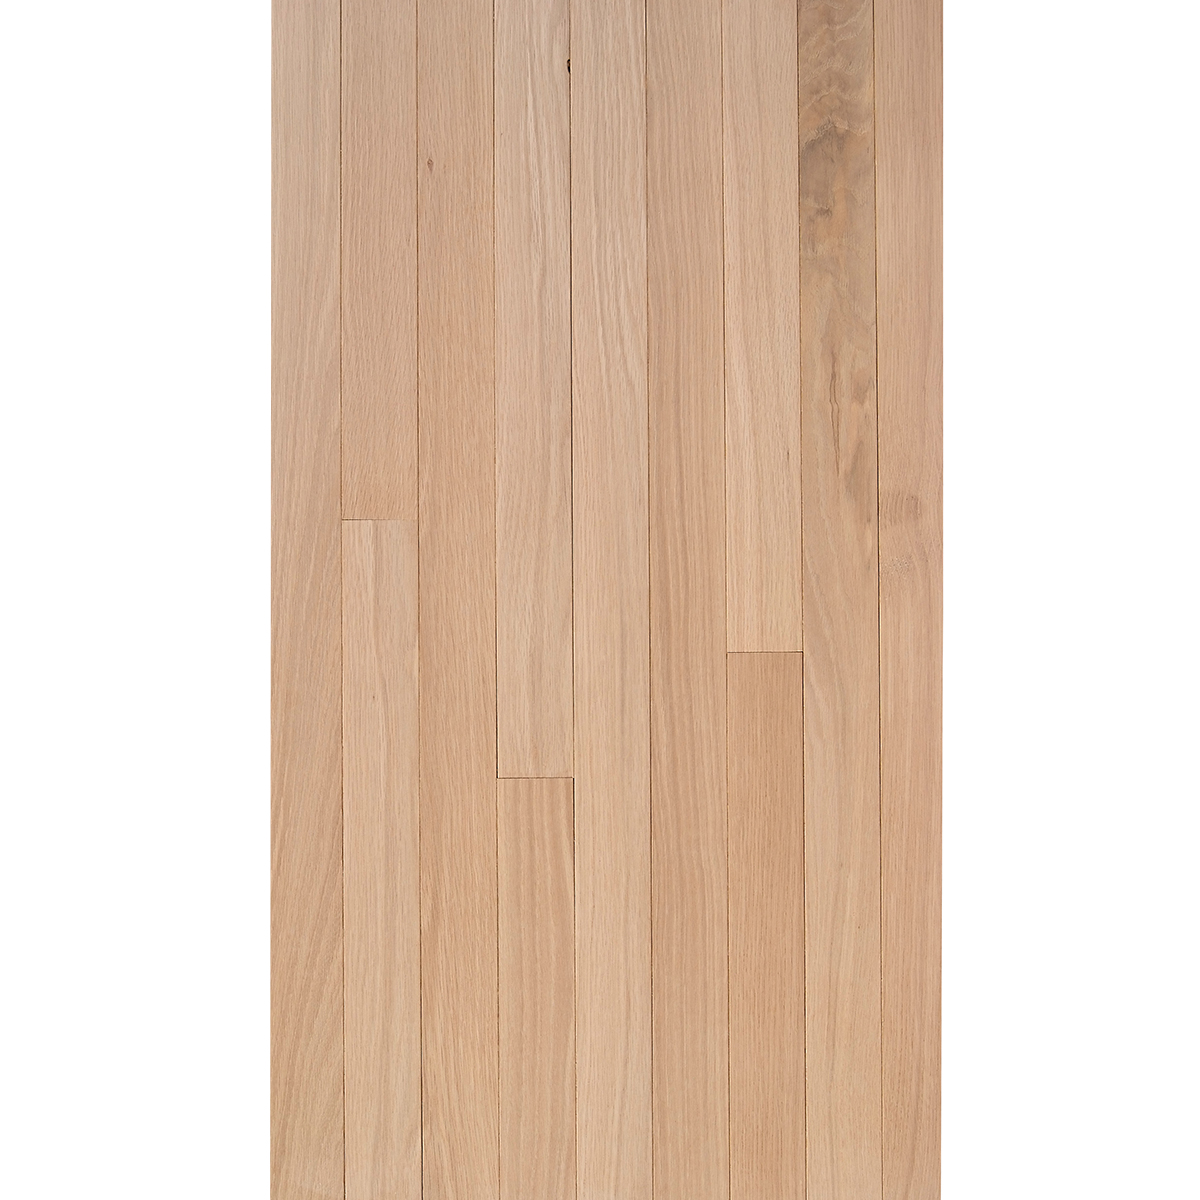 White Oak 3 4 X 2 1 Select Grade, 2 1 4 Maple Hardwood Flooring Unfinished